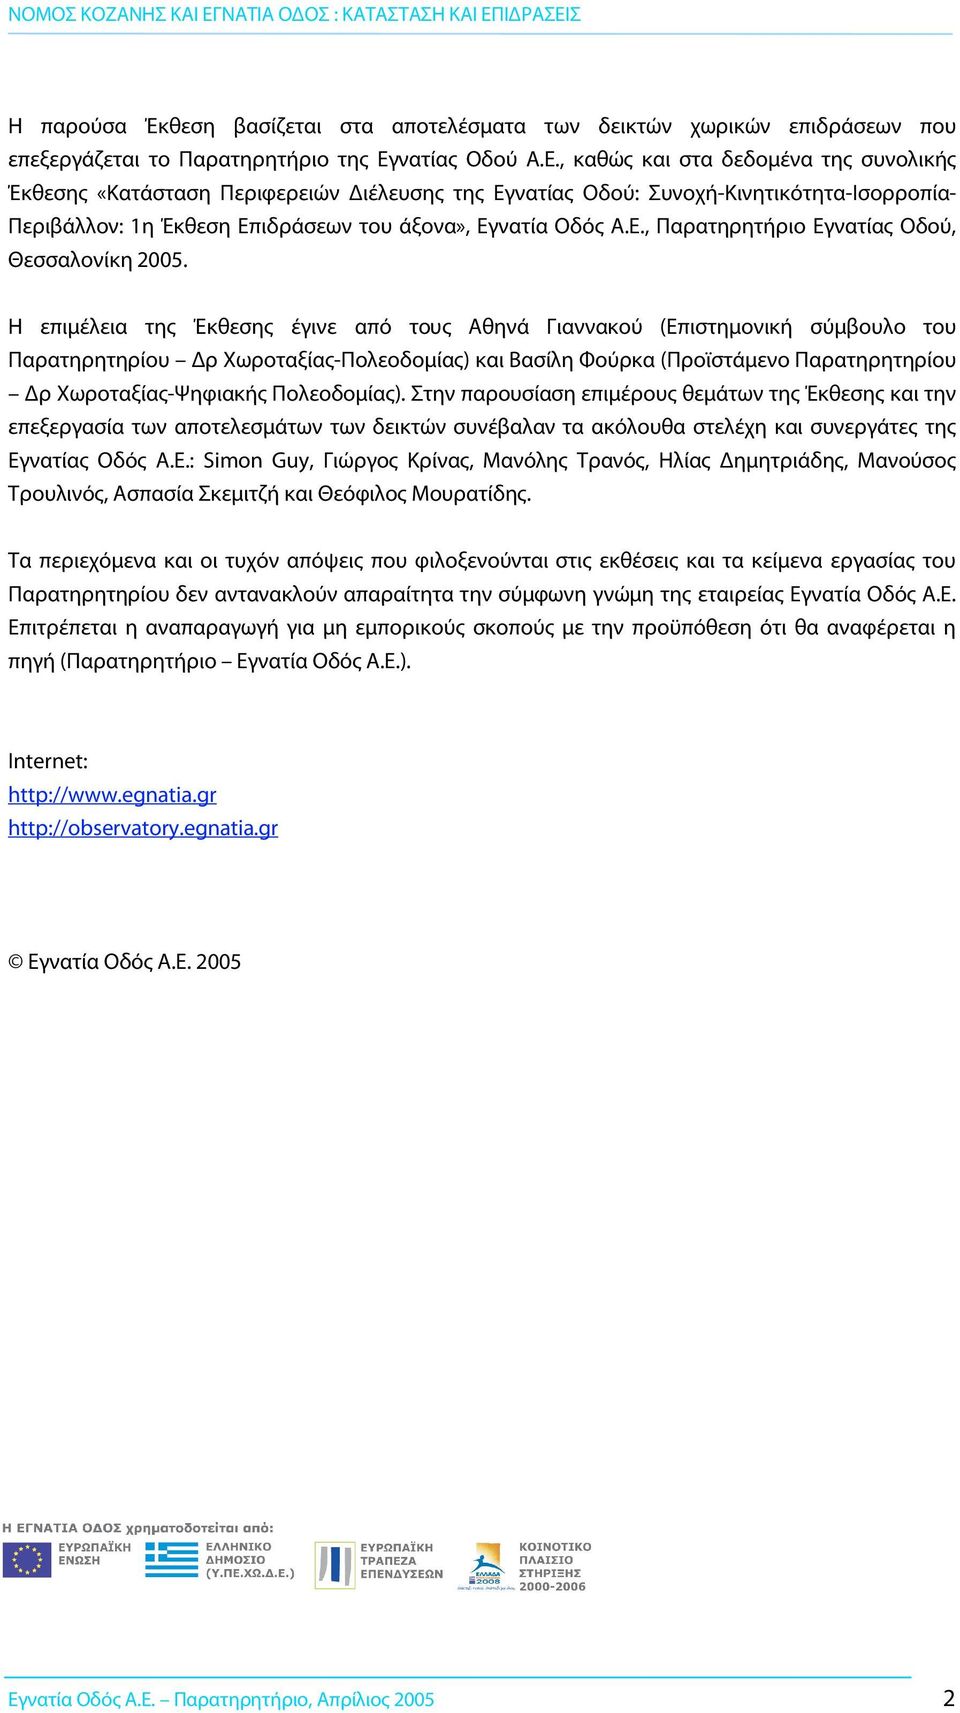 , καθώς και στα δεδομένα της συνολικής Έκθεσης «Κατάσταση Περιφερειών ιέλευσης της Εγνατίας Oδού: Συνοχή-Κινητικότητα-Ισορροπία- Περιβάλλον: 1η Έκθεση Επιδράσεων του άξονα», Εγνατία Οδός Α.Ε., Παρατηρητήριο Εγνατίας Οδού, Θεσσαλονίκη 2005.